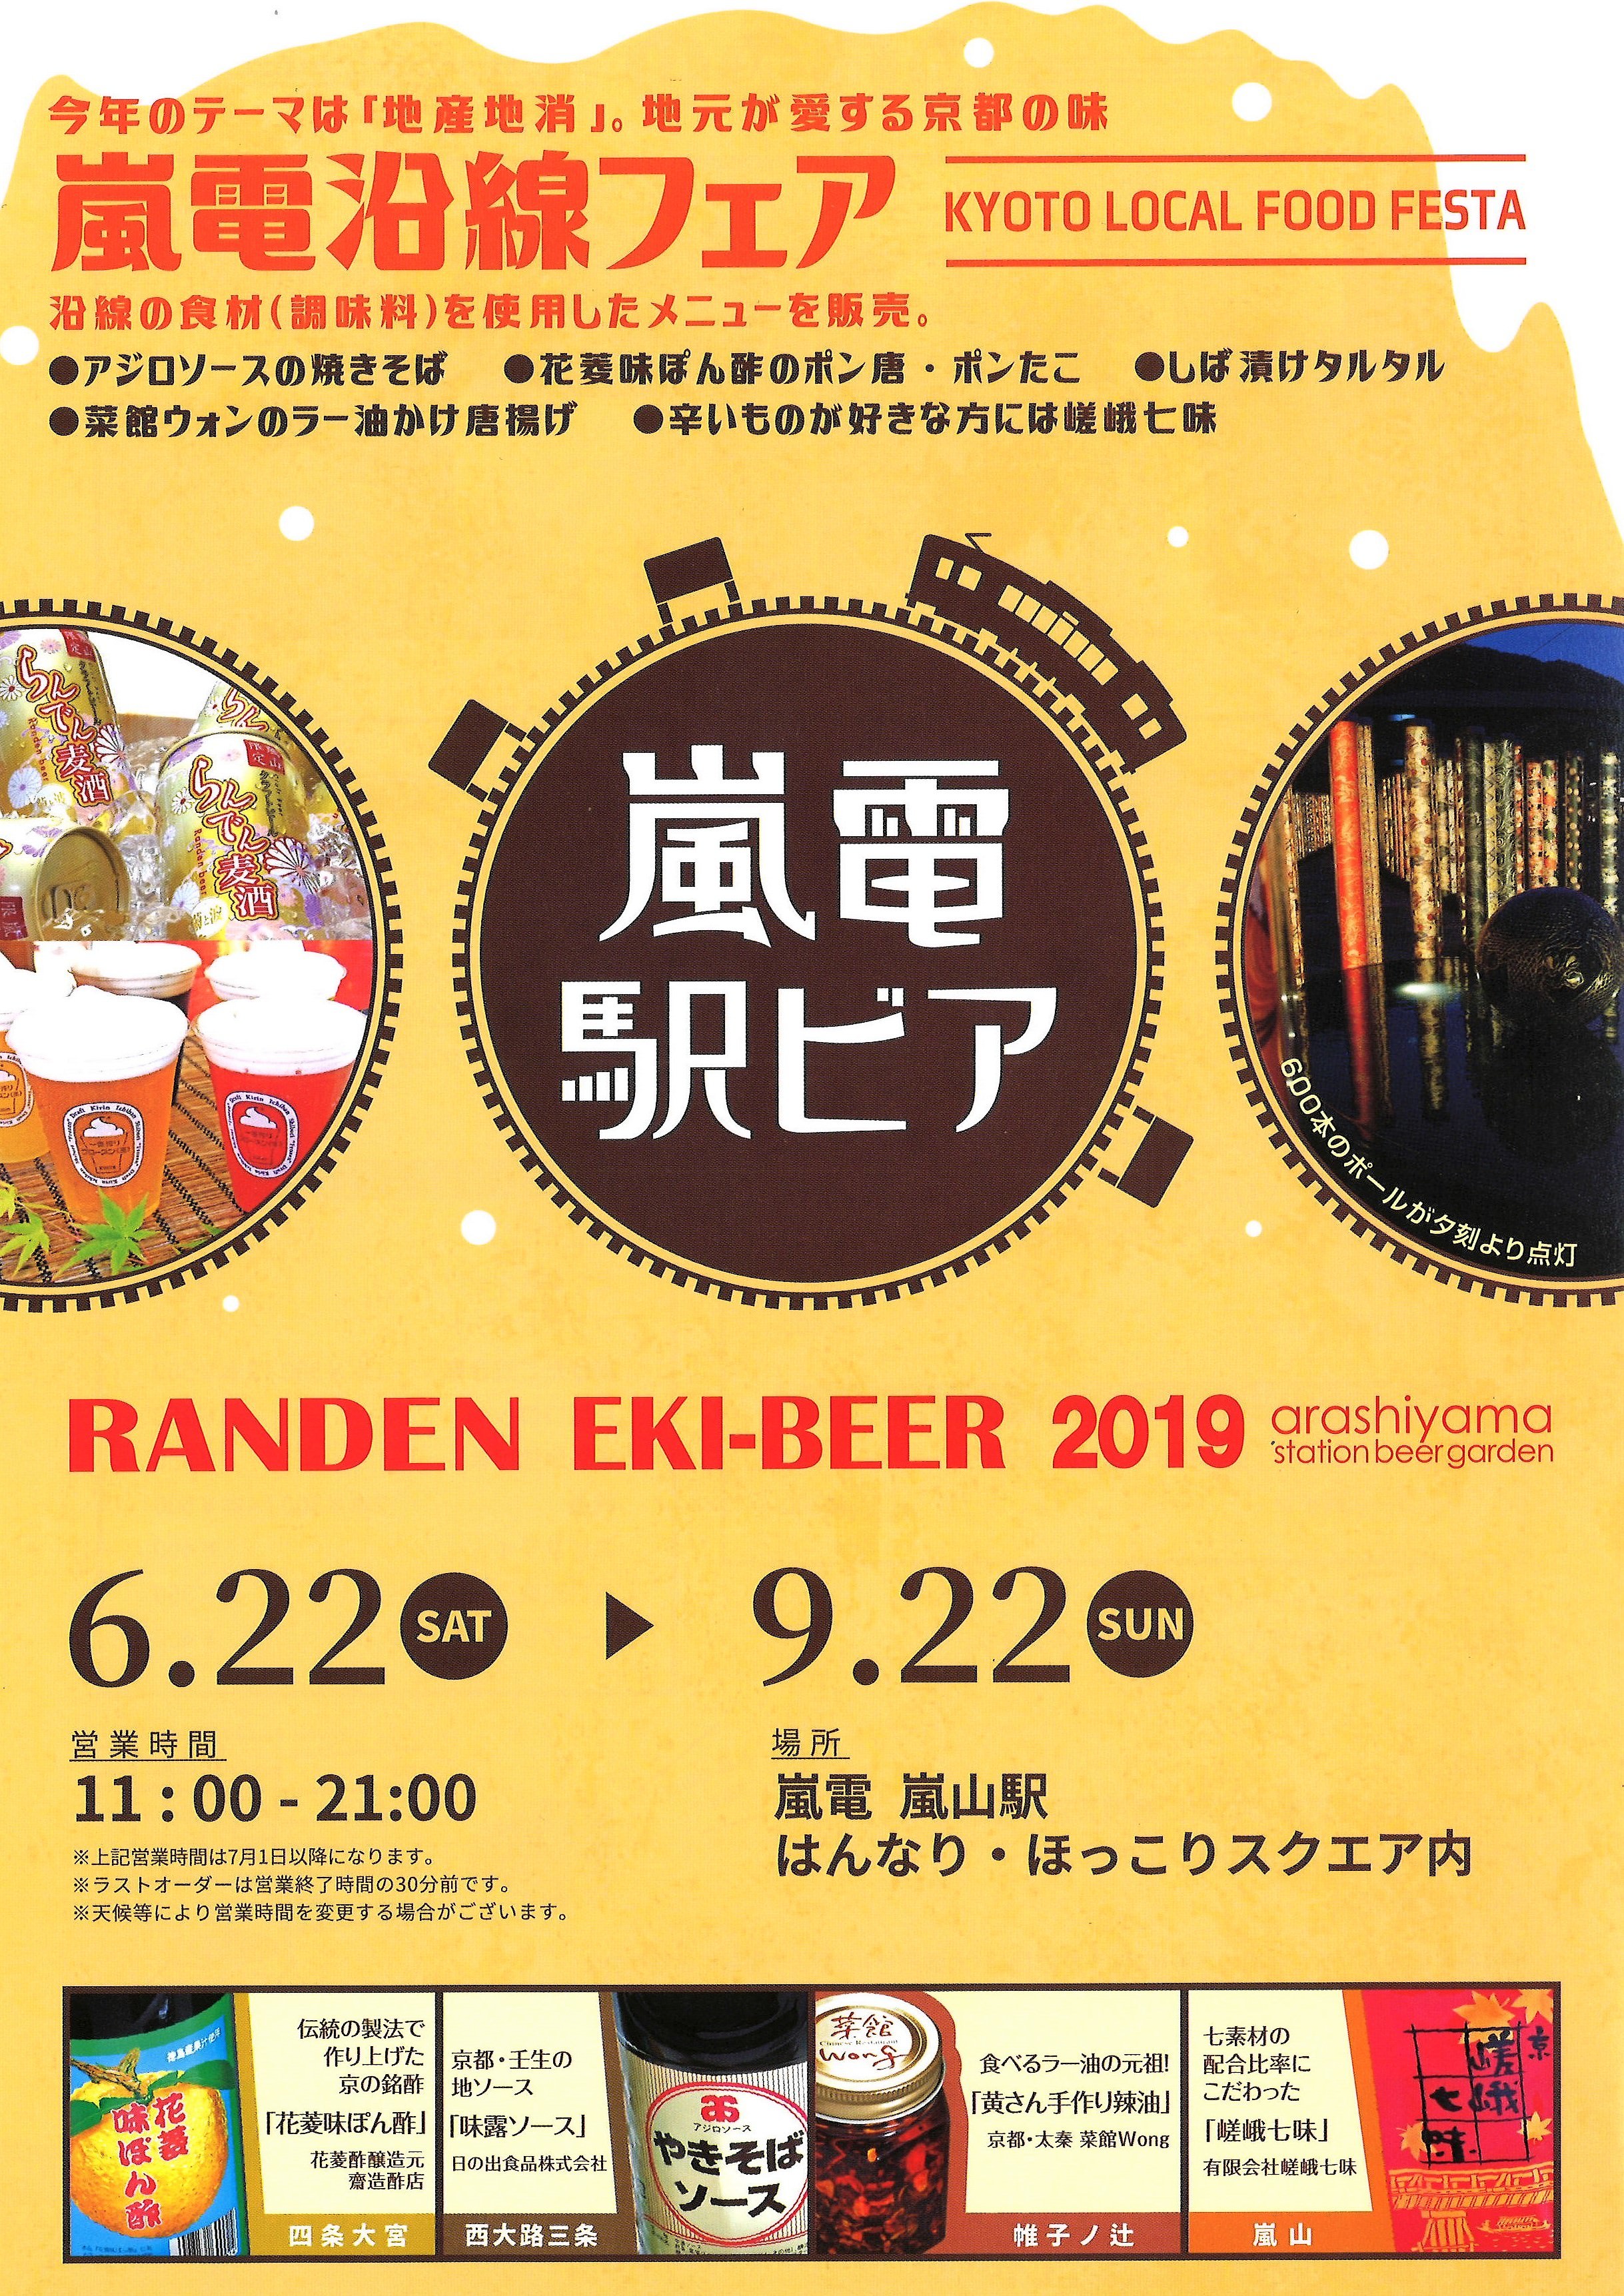 千葉商科大学 — エシカル消費をテーマとしたカフェ出店とパタゴニア「Worn Wear」を同時開催